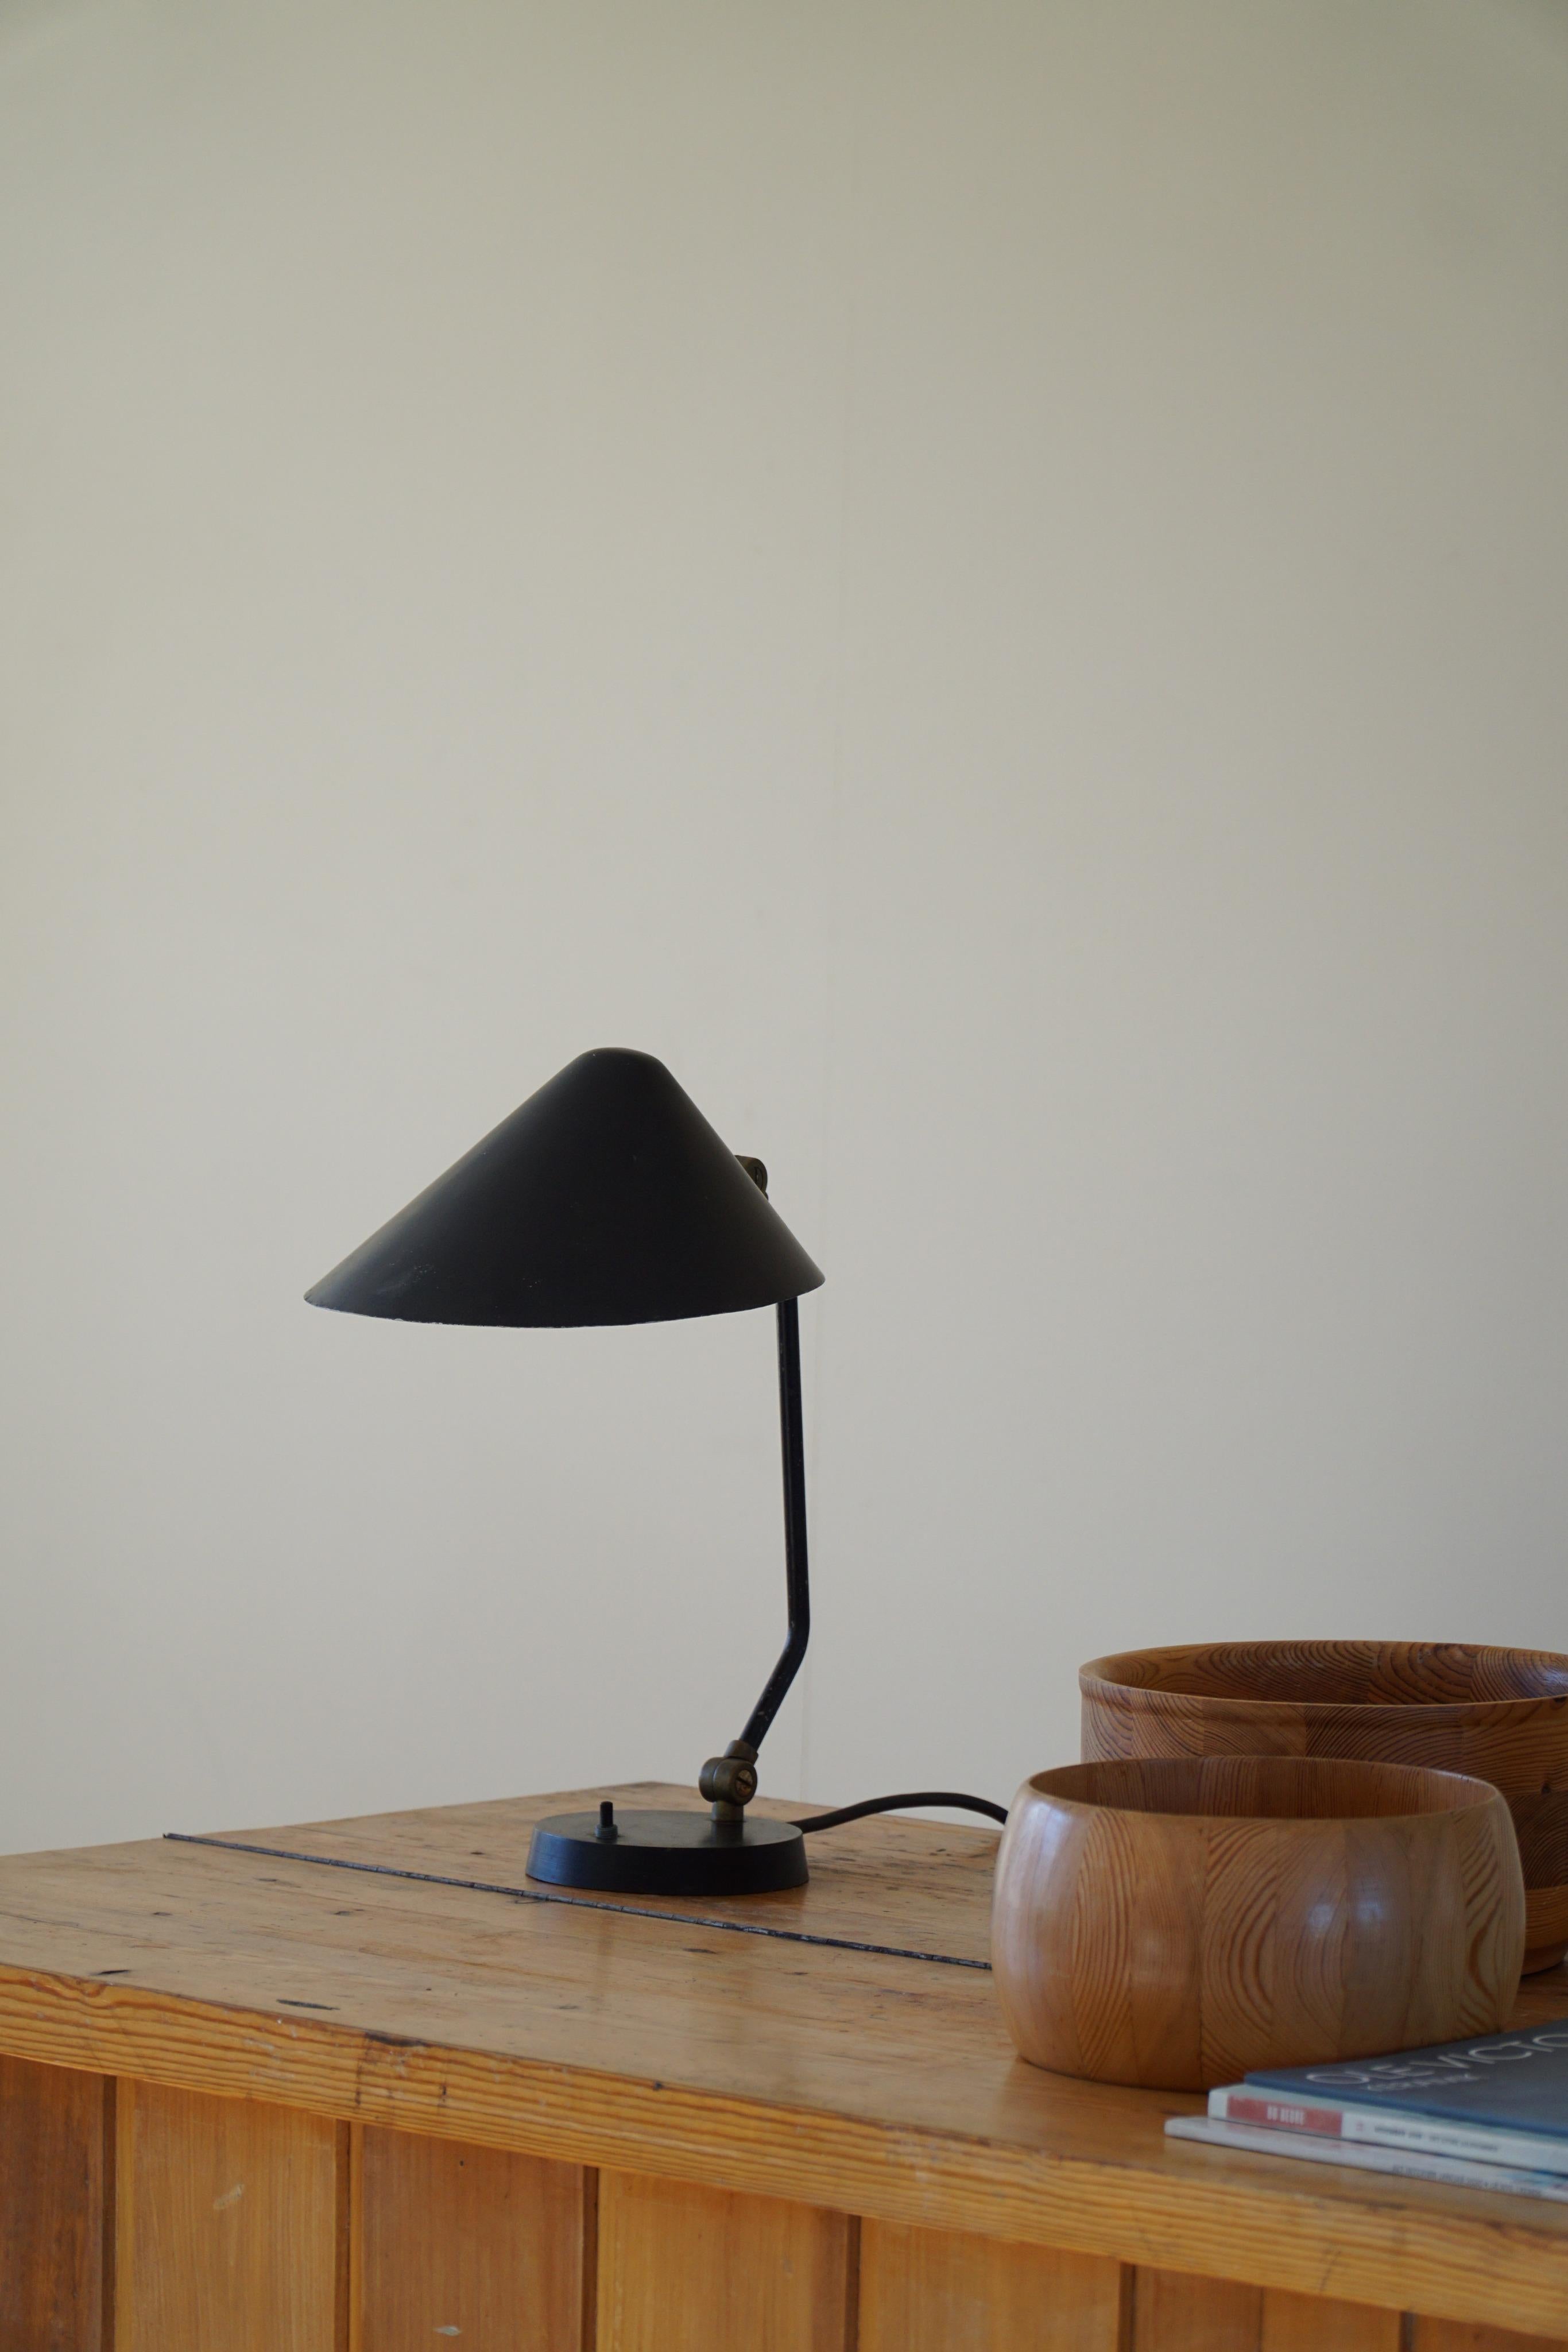 Rare et élégante lampe à poser orientable en métal laqué noir des années 1950. Fabriqué par la société danoise Louis Poulsen.  
La lumière peut être dirigée directement vers un sujet ainsi que tournée contre un mur pour une lumière plus douce.